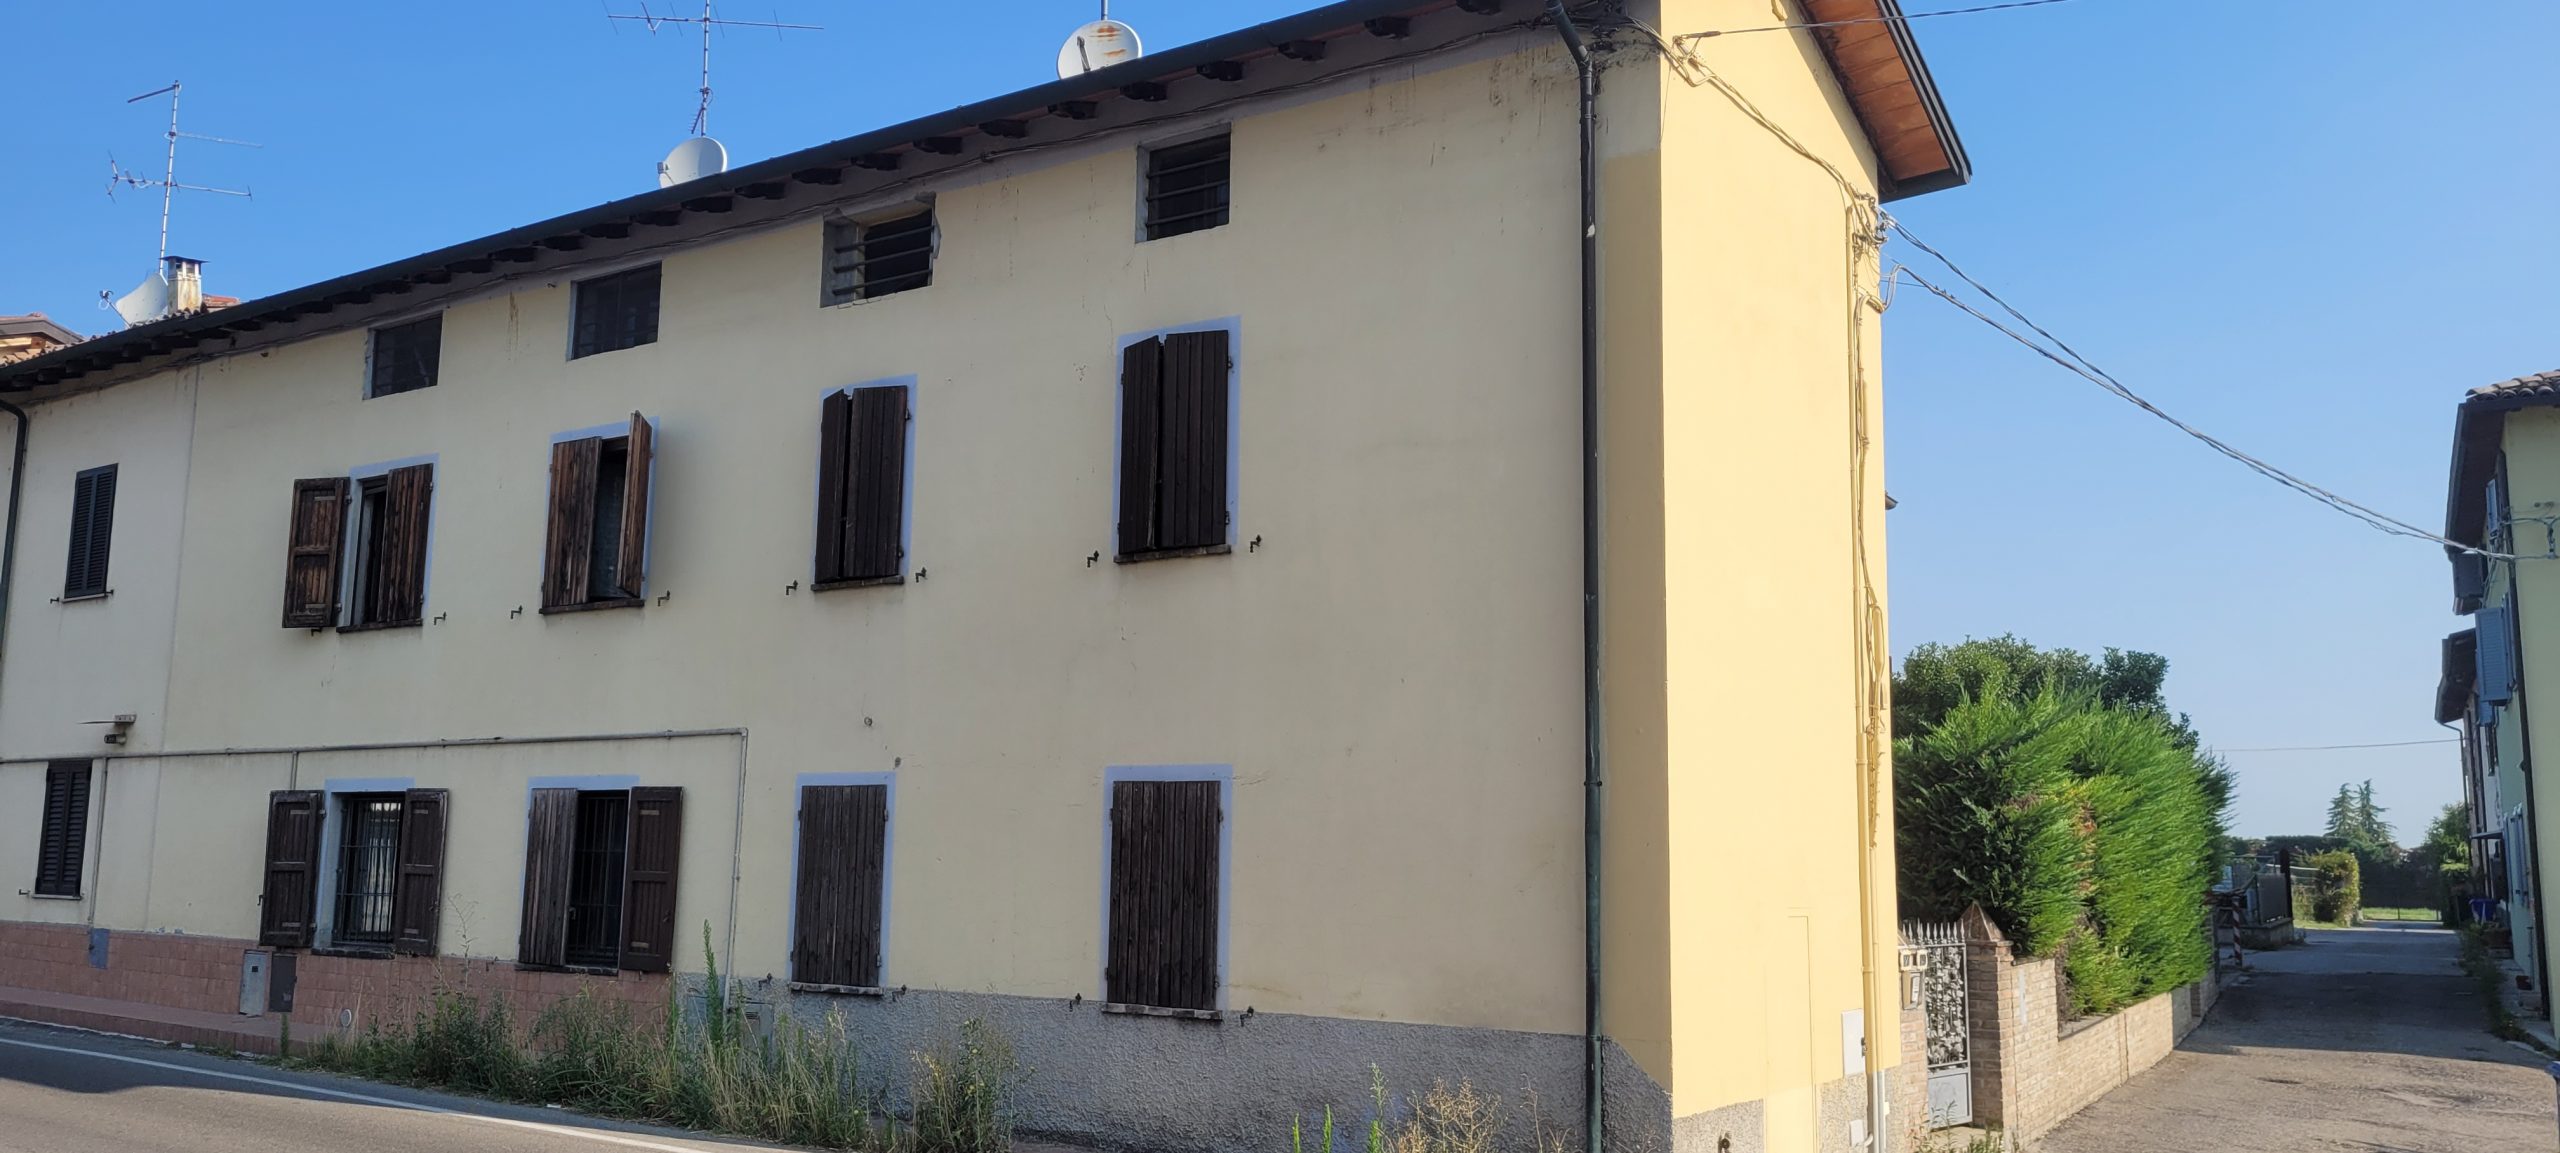 Porzione di casa terra/tetto in San Michele Tiorre